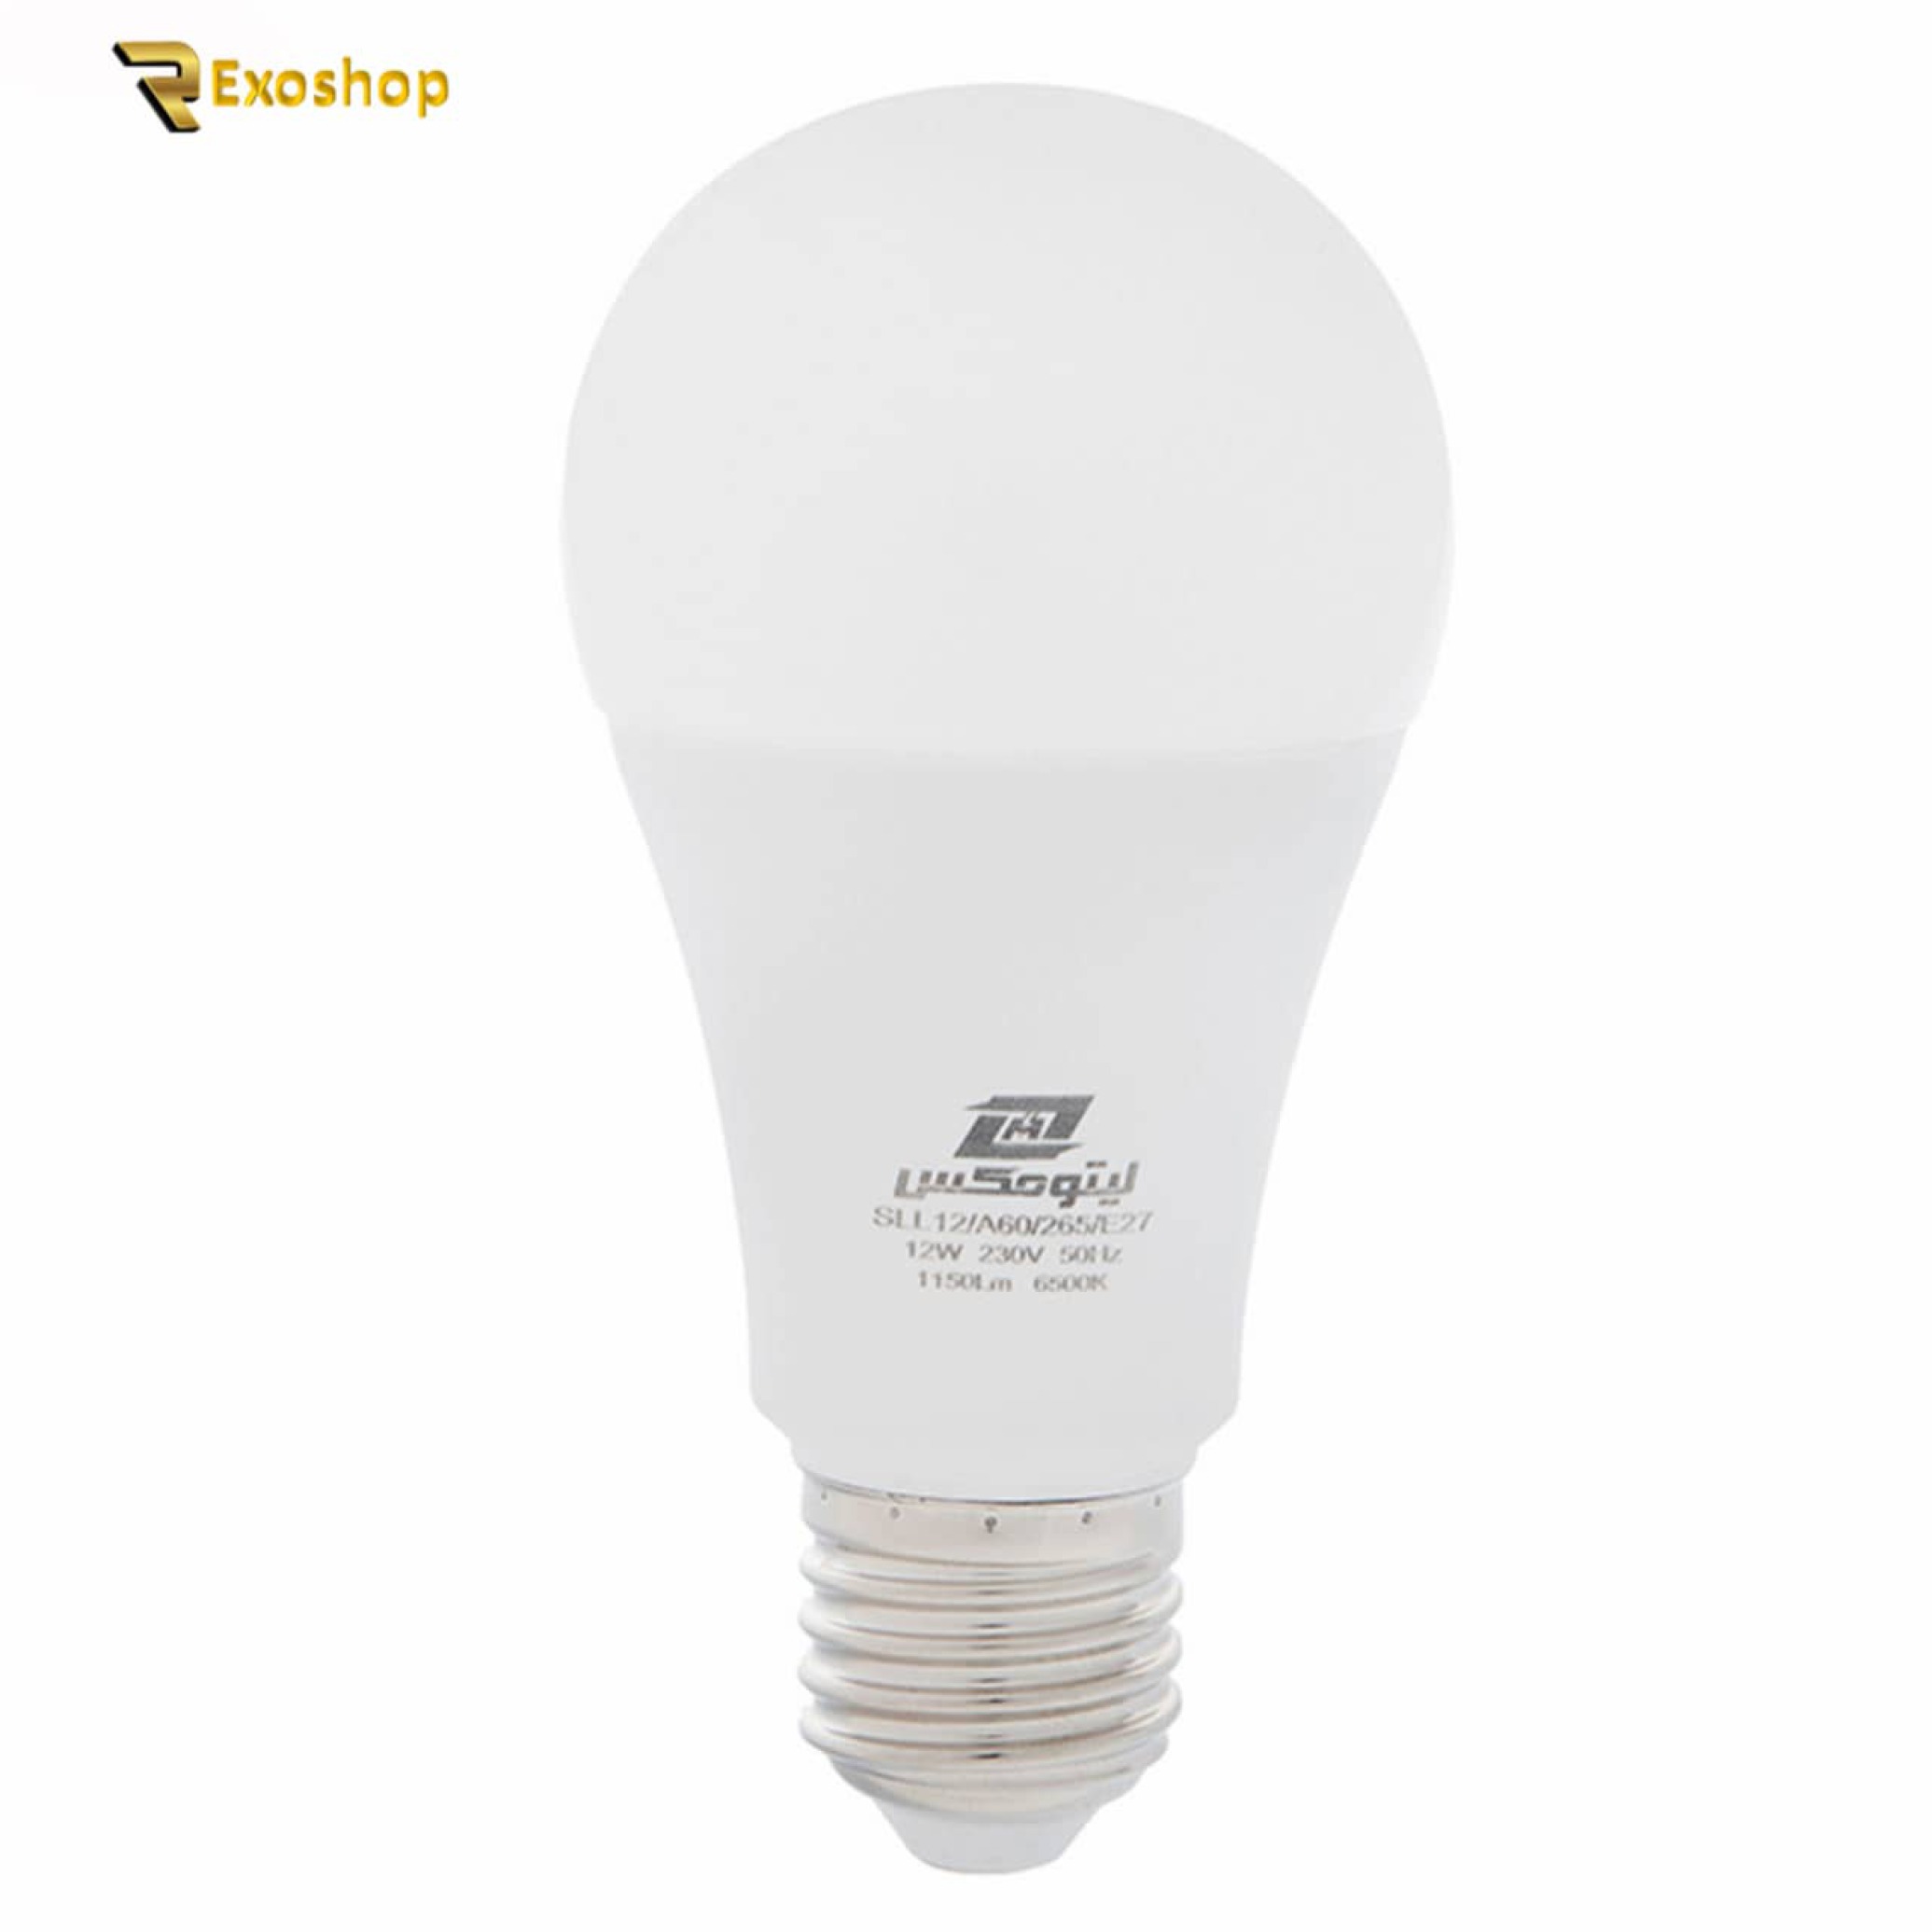  لامپ ال ای دی 12 وات لیتومکس مدل 001 پایه E27 یکی از بهترین لامپ ها است که با قیمتی ارزان در رکسوشاپ موجود می باشد 